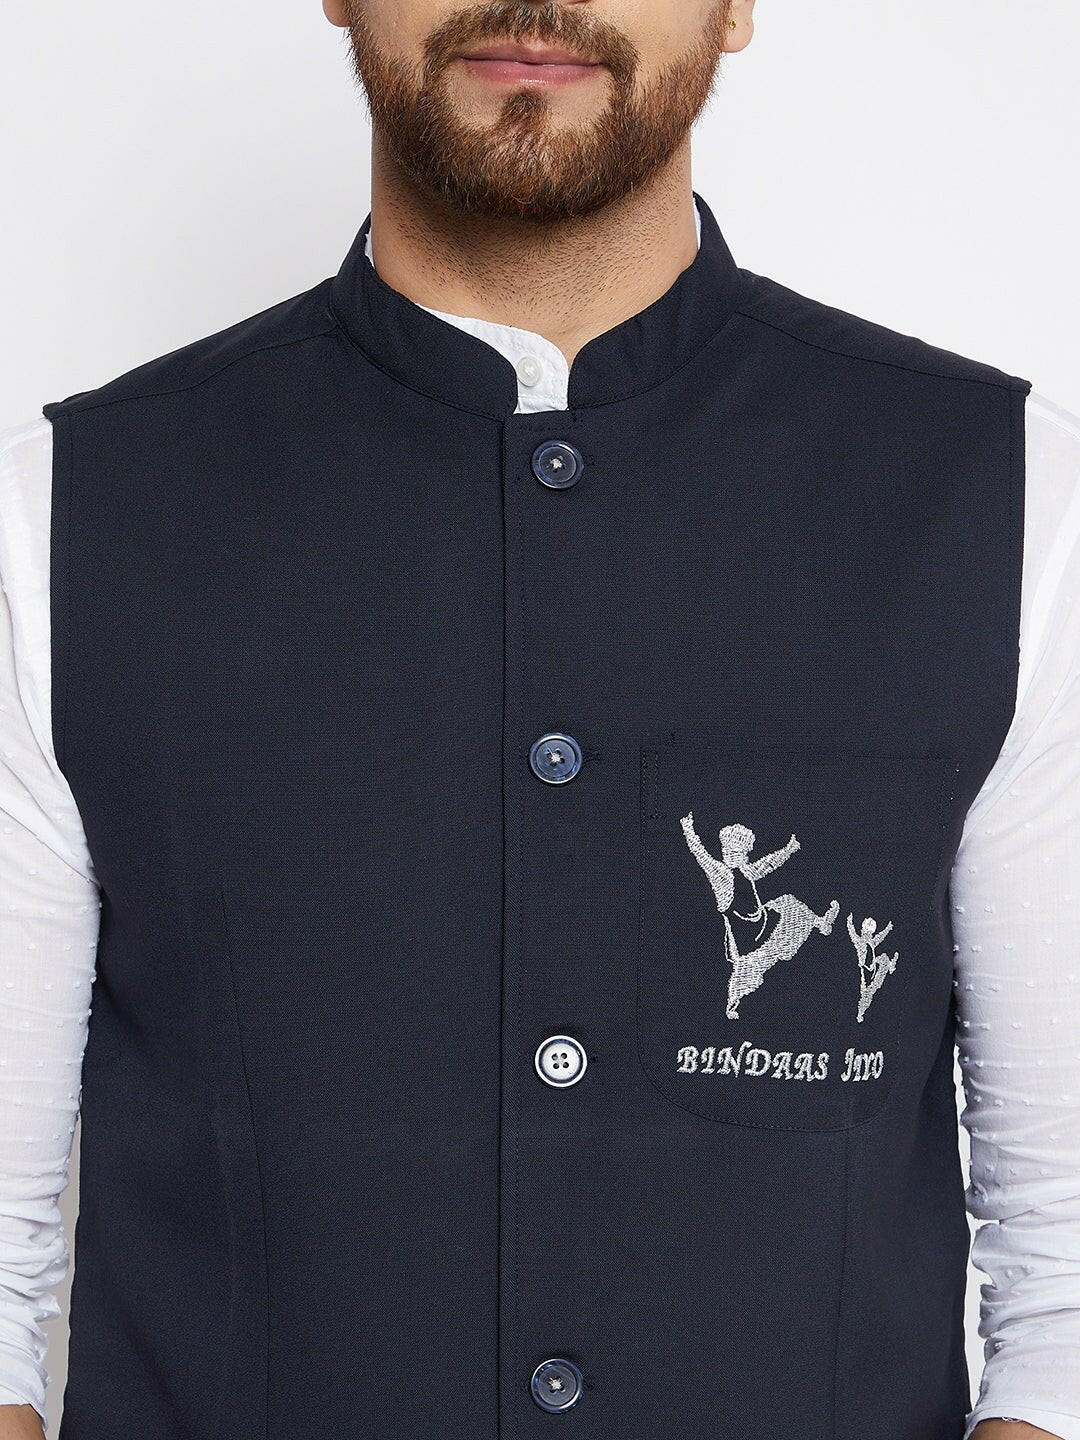 Bindaas Jiyo Woven Design Nehru Jacket